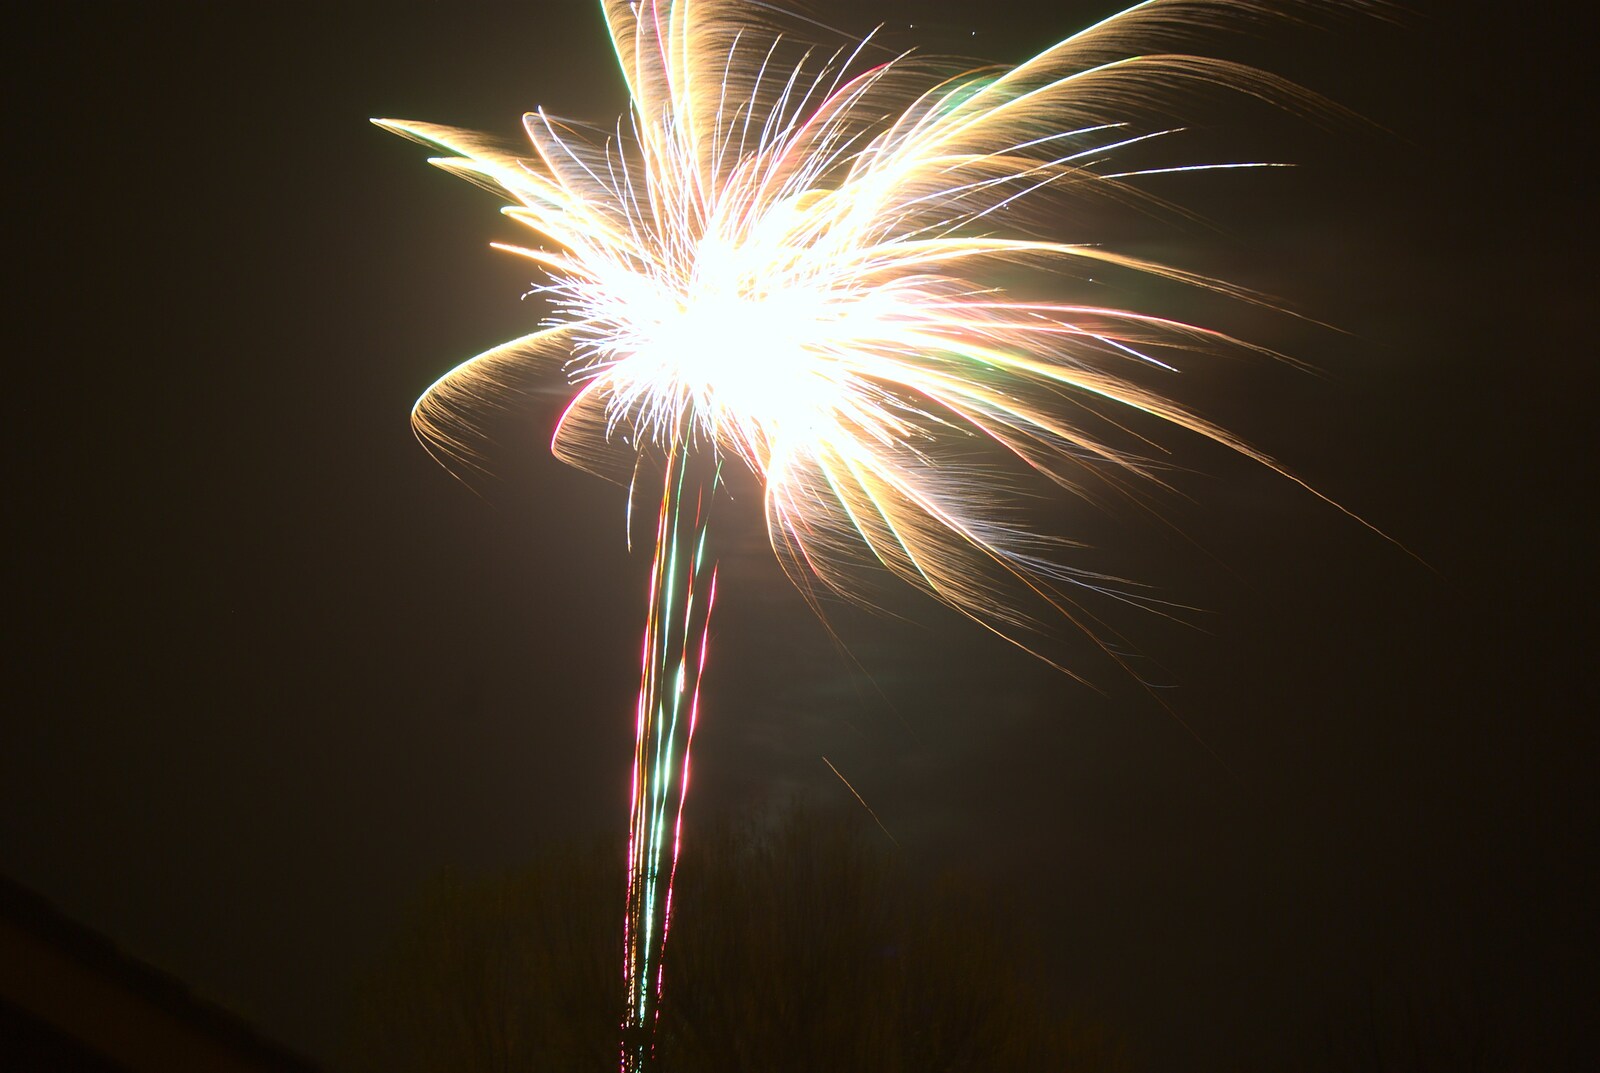 A splash of light from several fireworks from Autumn in Thornham Estate, Thornham, Suffolk - 6th November 2011